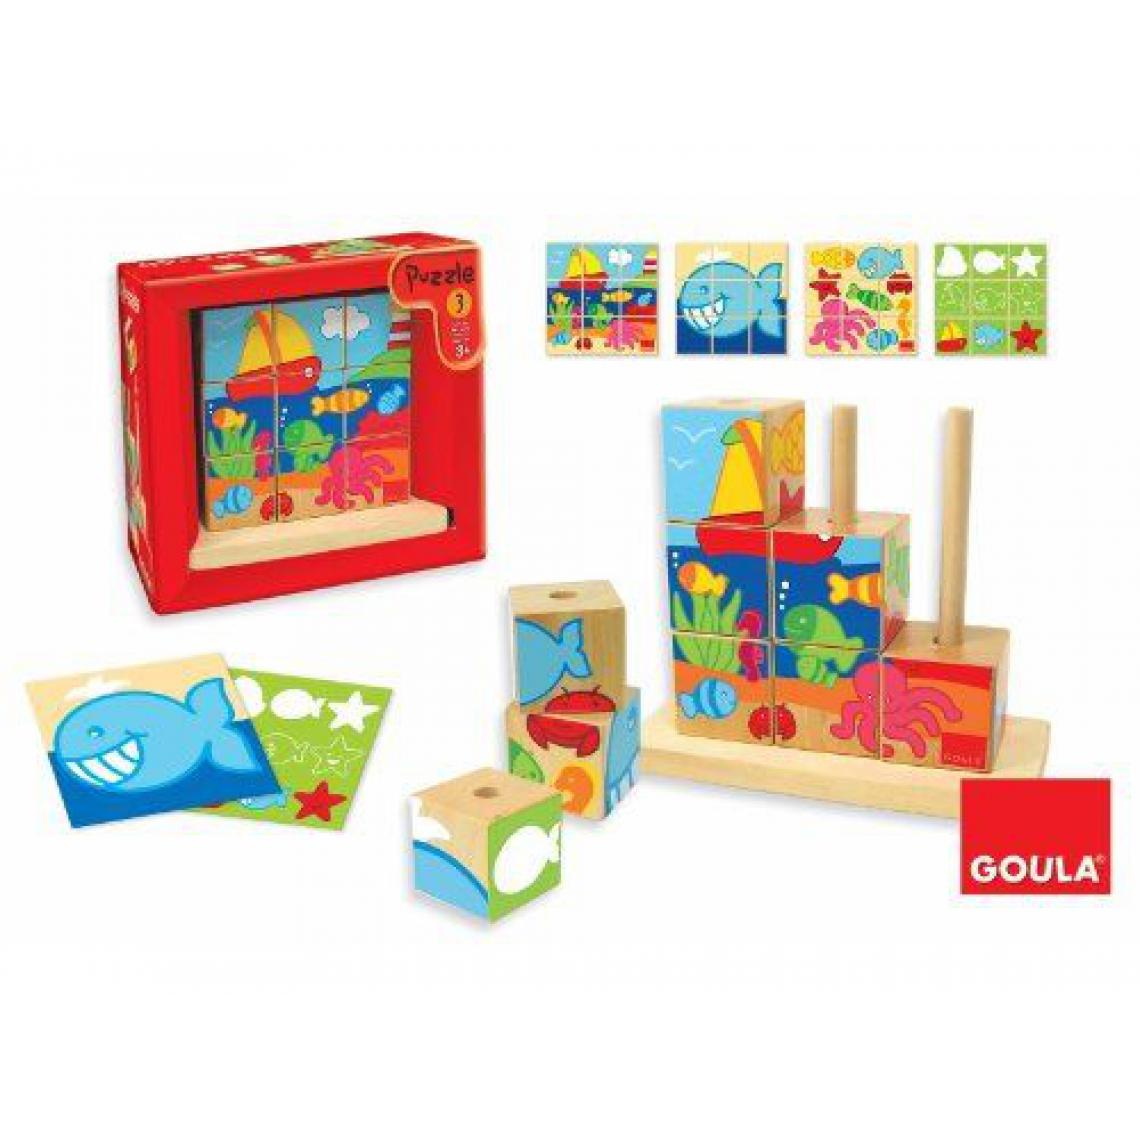 Goula - Goula - 55198 - Jouet en Bois - Eveil - Puzzle - Cubes Mer - Animaux